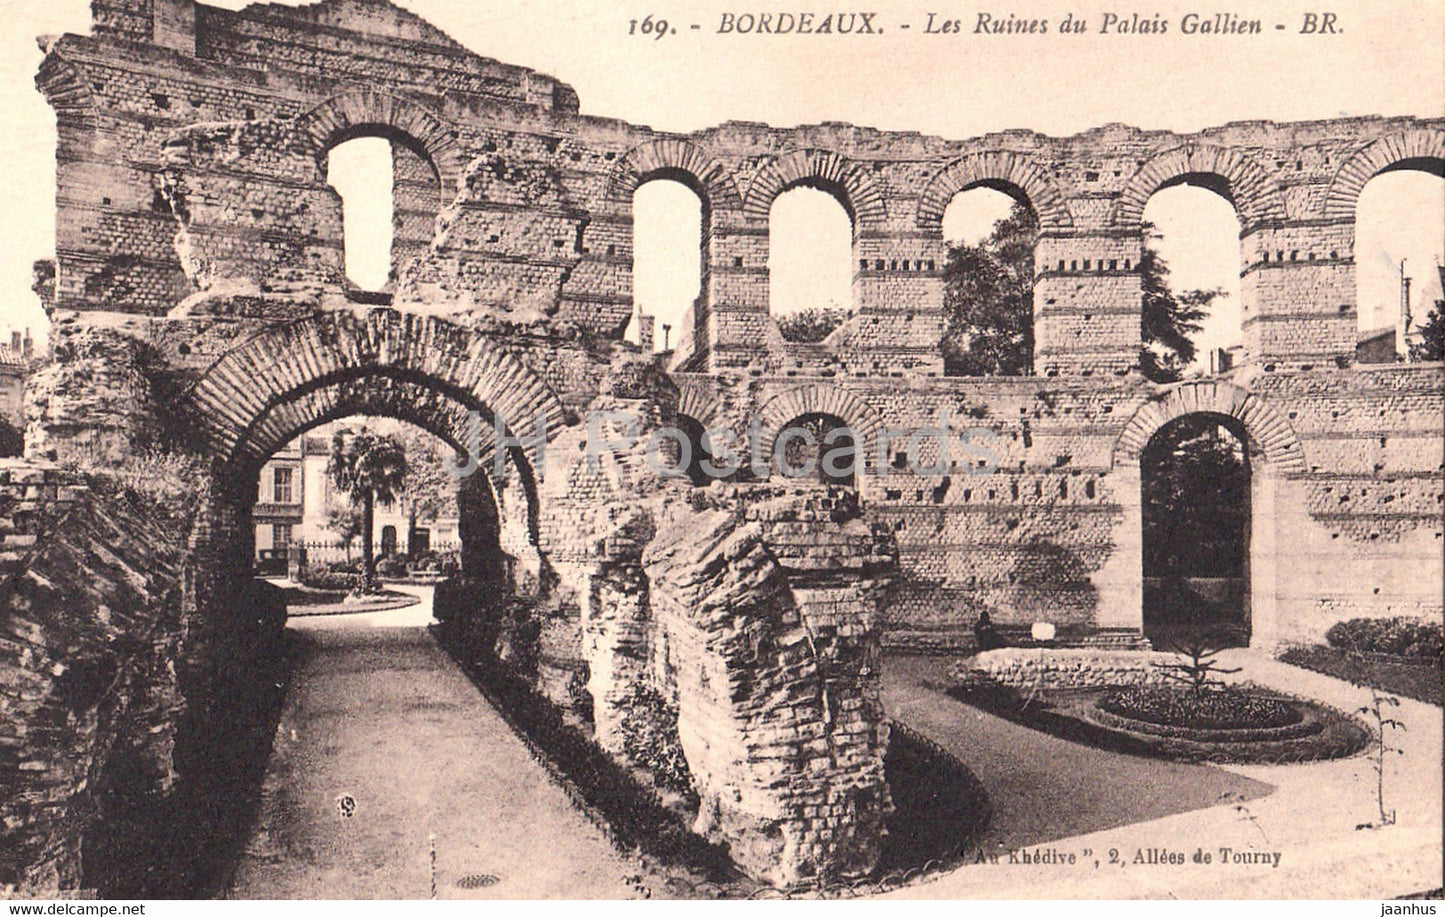 Bordeaux - Les Ruines du Palais Gallien - 169 - old postcard - France - unused - JH Postcards